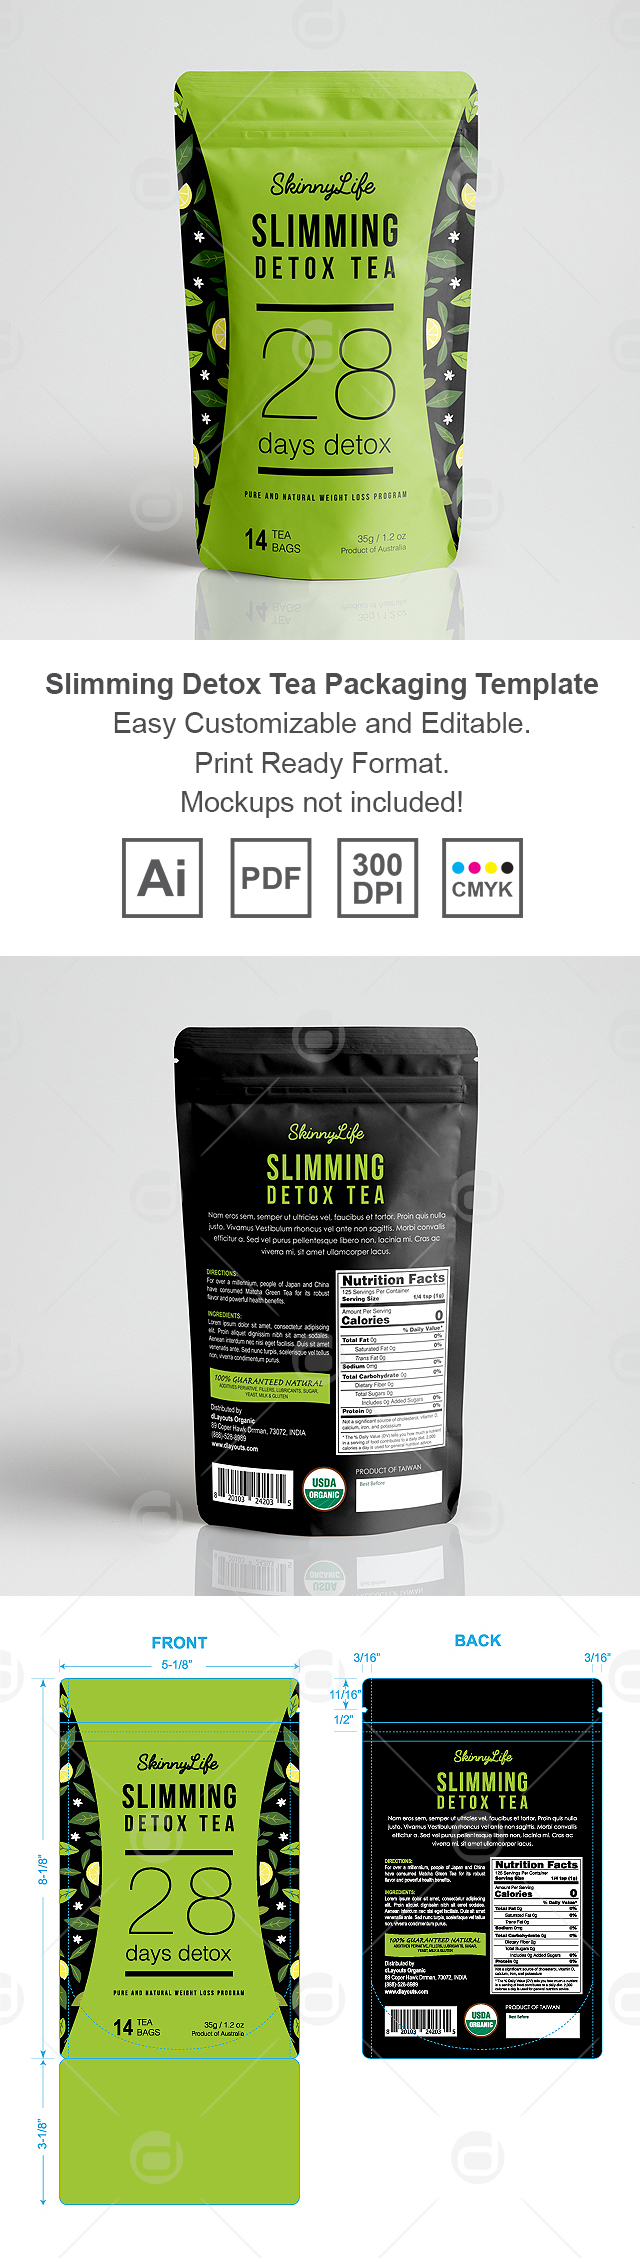 Slimming Detox Tea Packaging Template